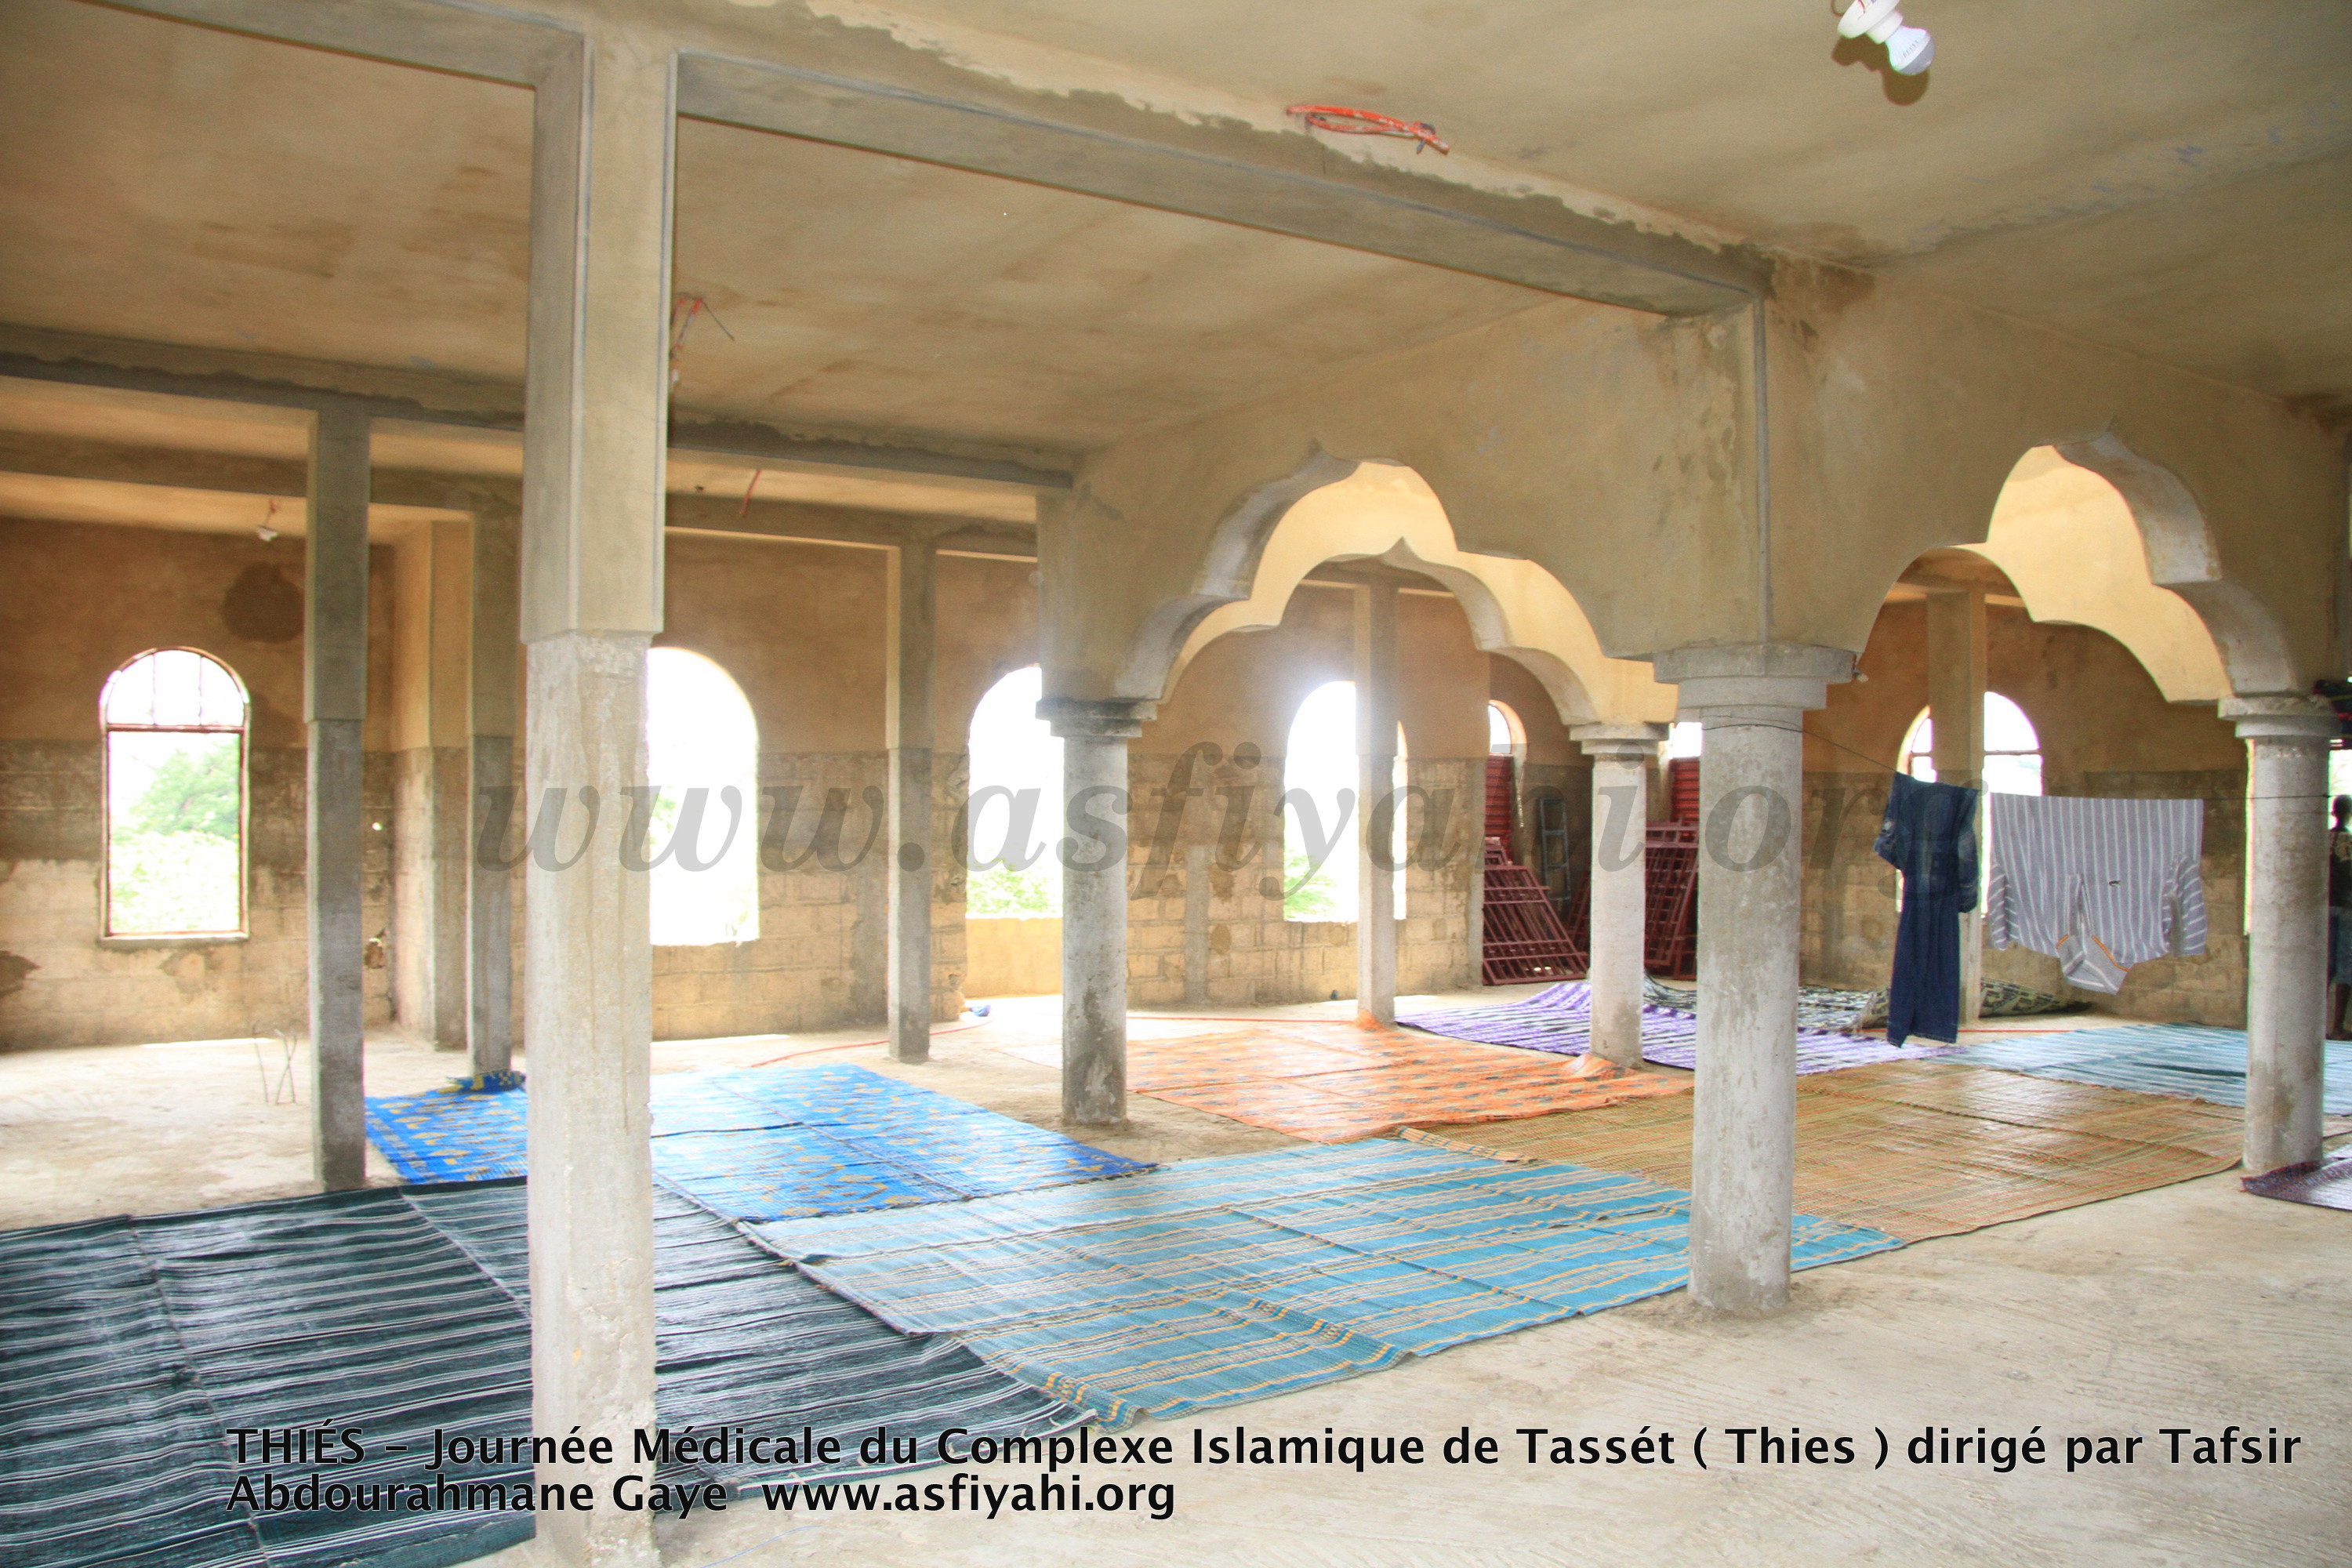 PHOTOS - THIÉS - Les Images de la Journée médicale du Complexe Islamique de Tassét (Thies) dirigé par Tafsir Abdourahmane Gaye